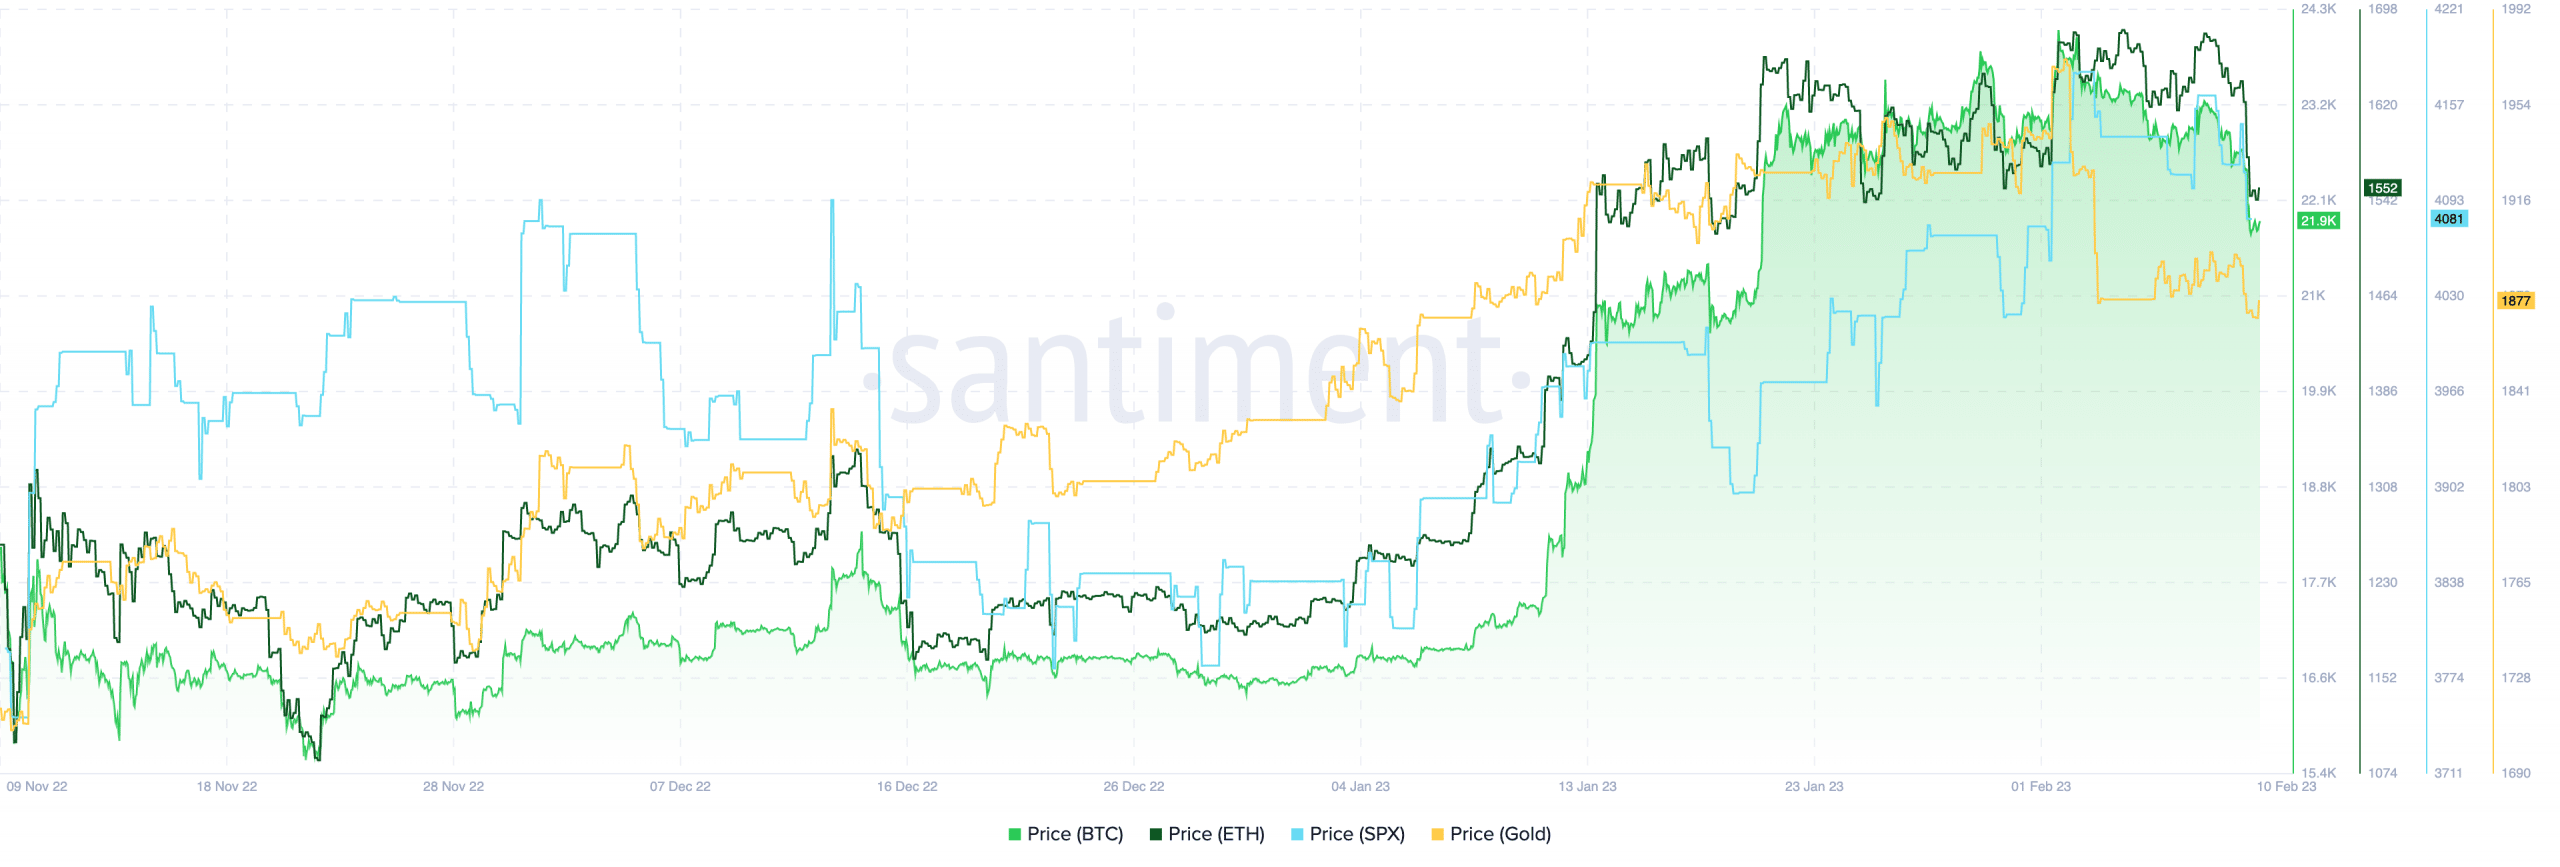 Correlação do Bitcoin com o S&P 500 e o preço do ouro